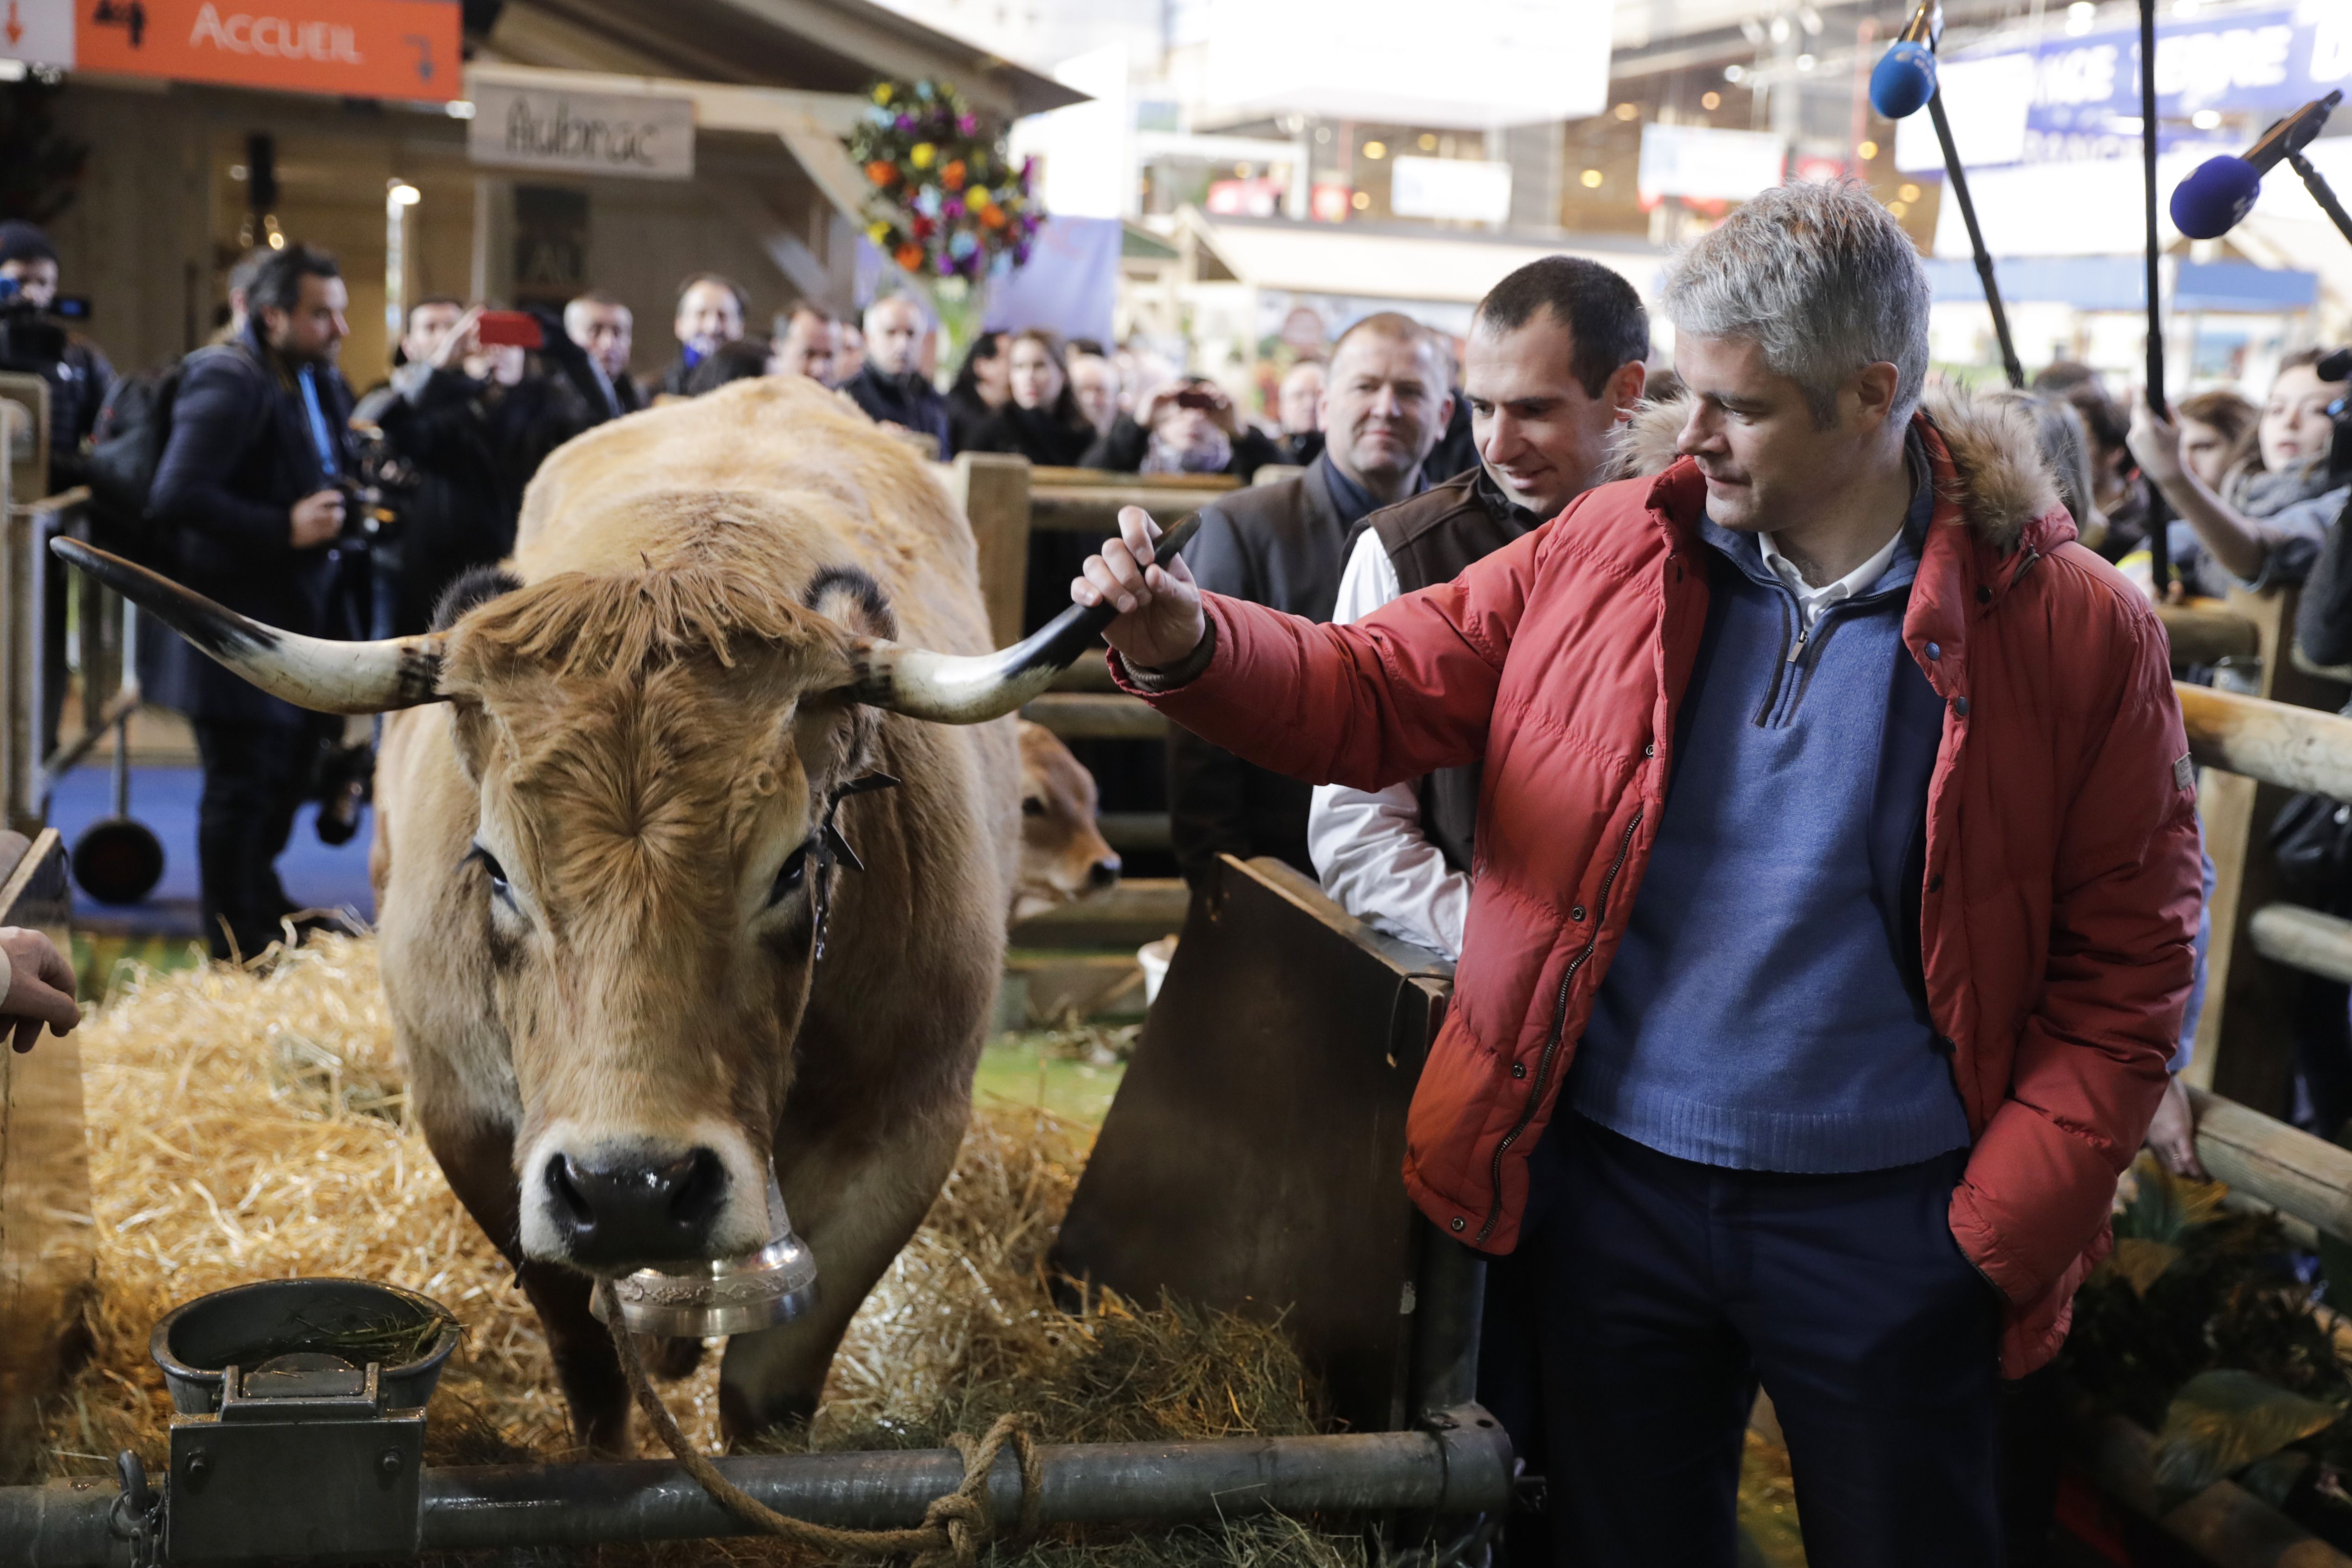 زعيم المعارضة اليمينى الفرنسى يداعب حيوانات معرض الزراعة